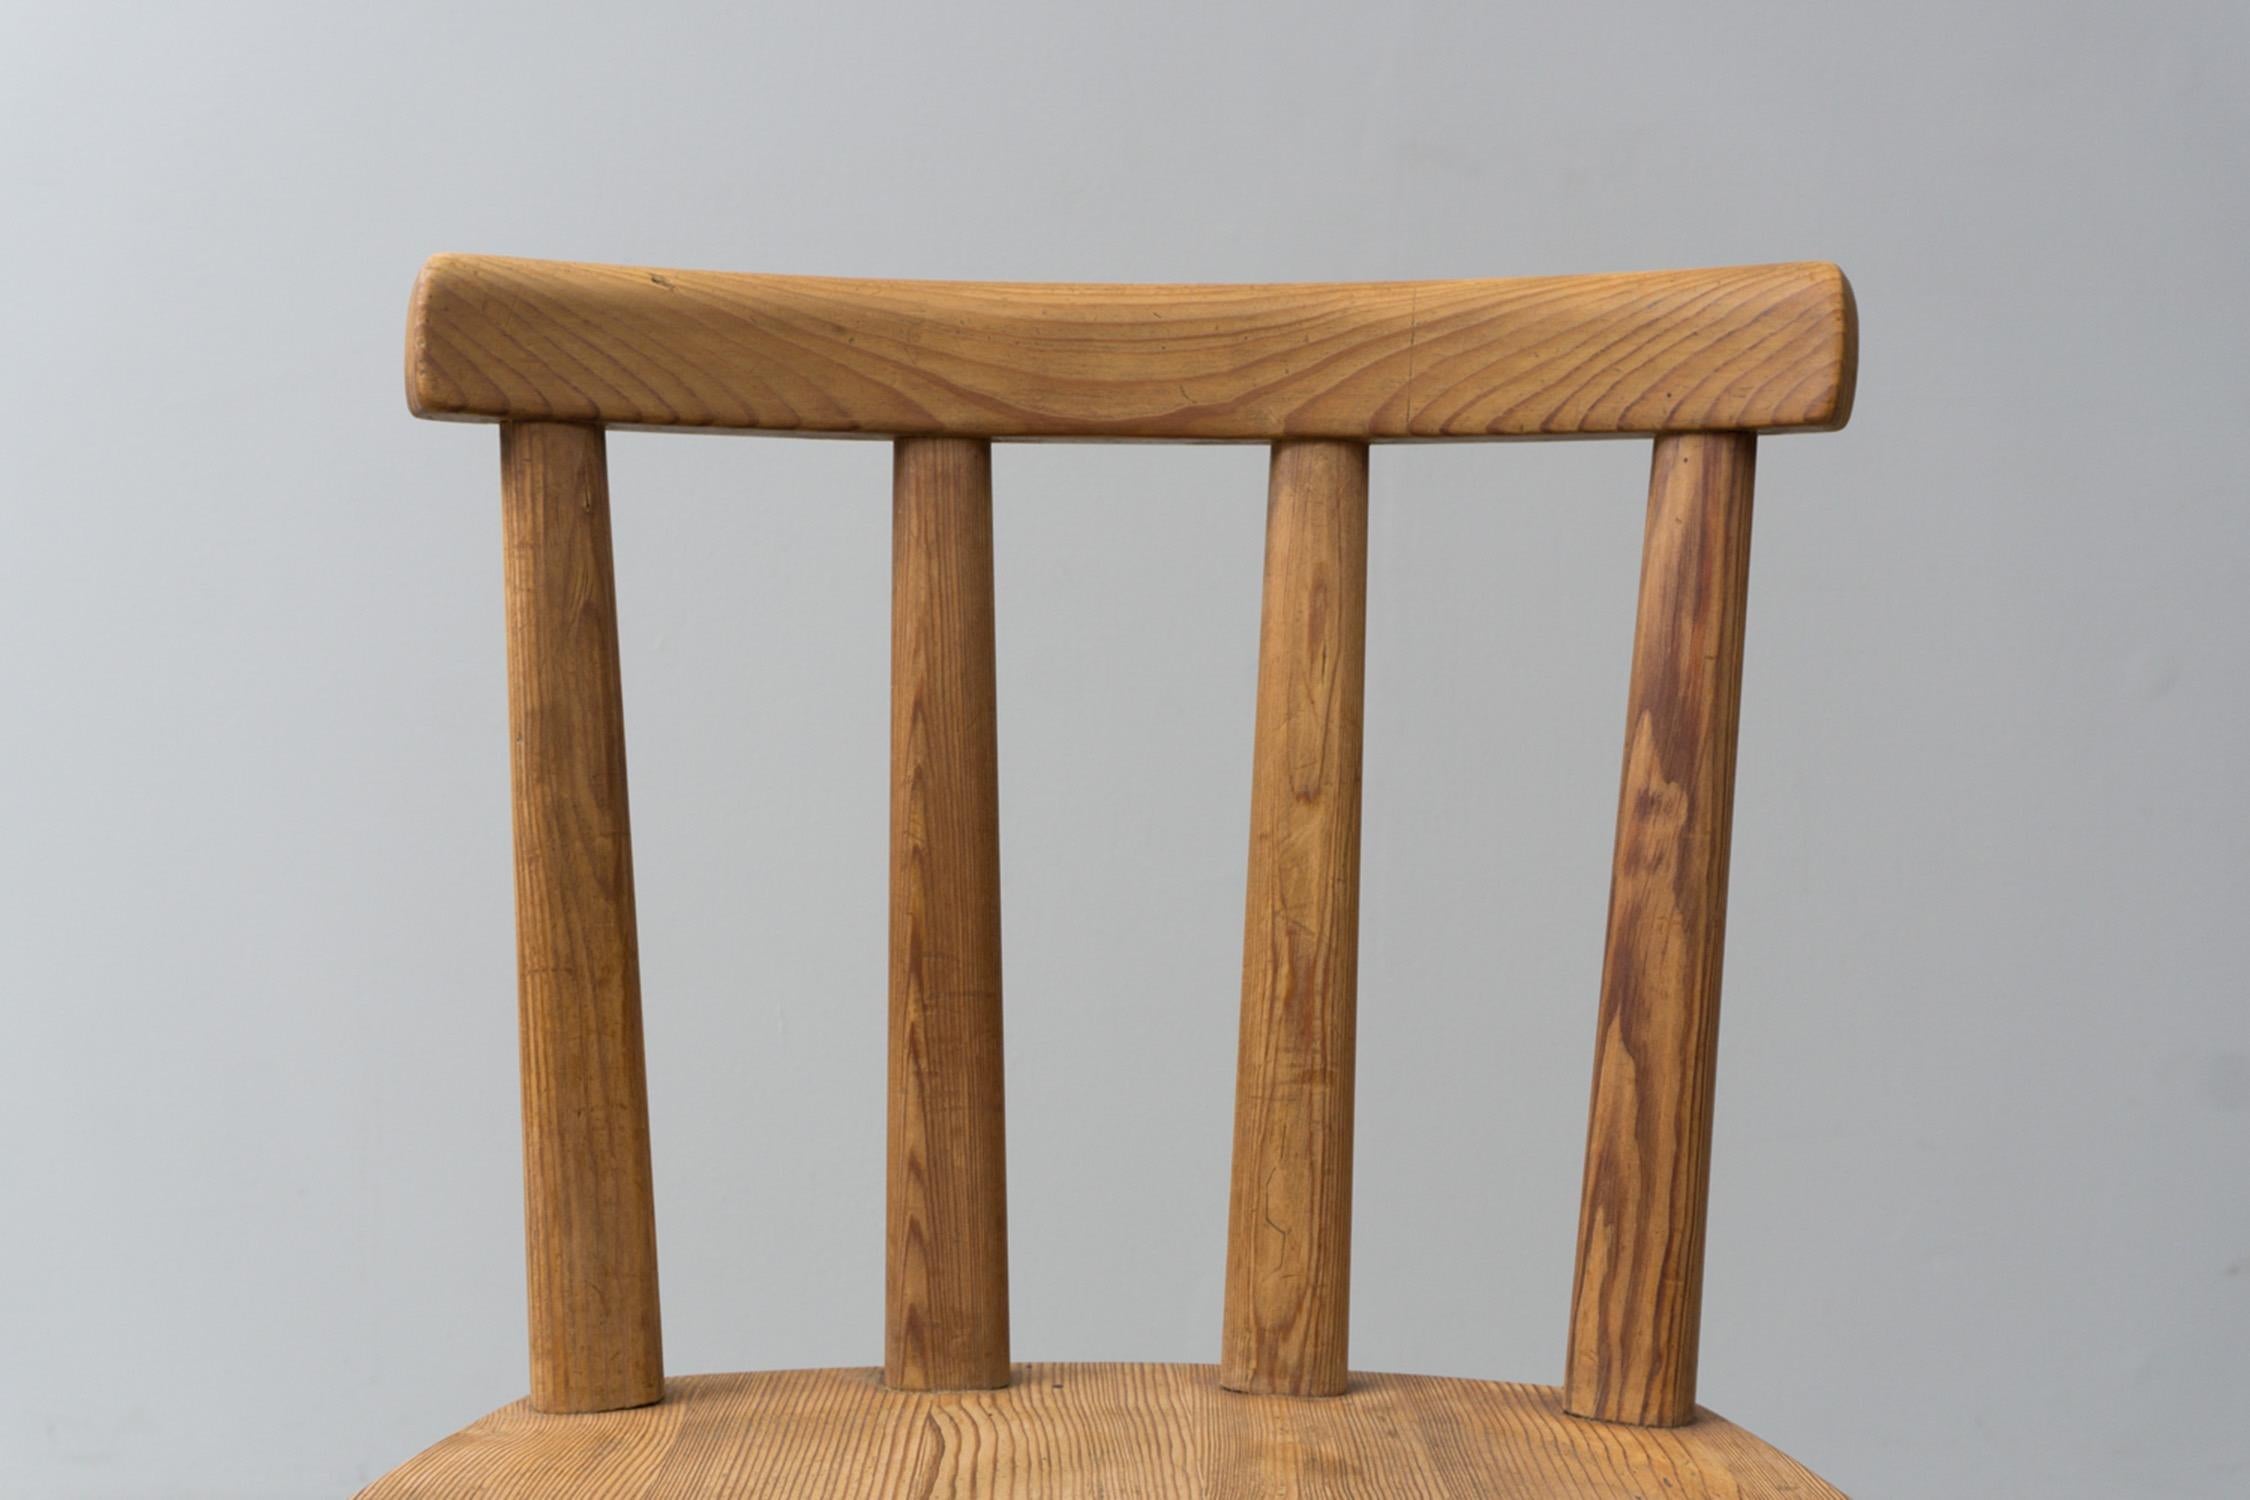 Pine 8 'Uto' Chairs by Axel Einar Hjorth, Nordics Kompaniet Sweden, 1930